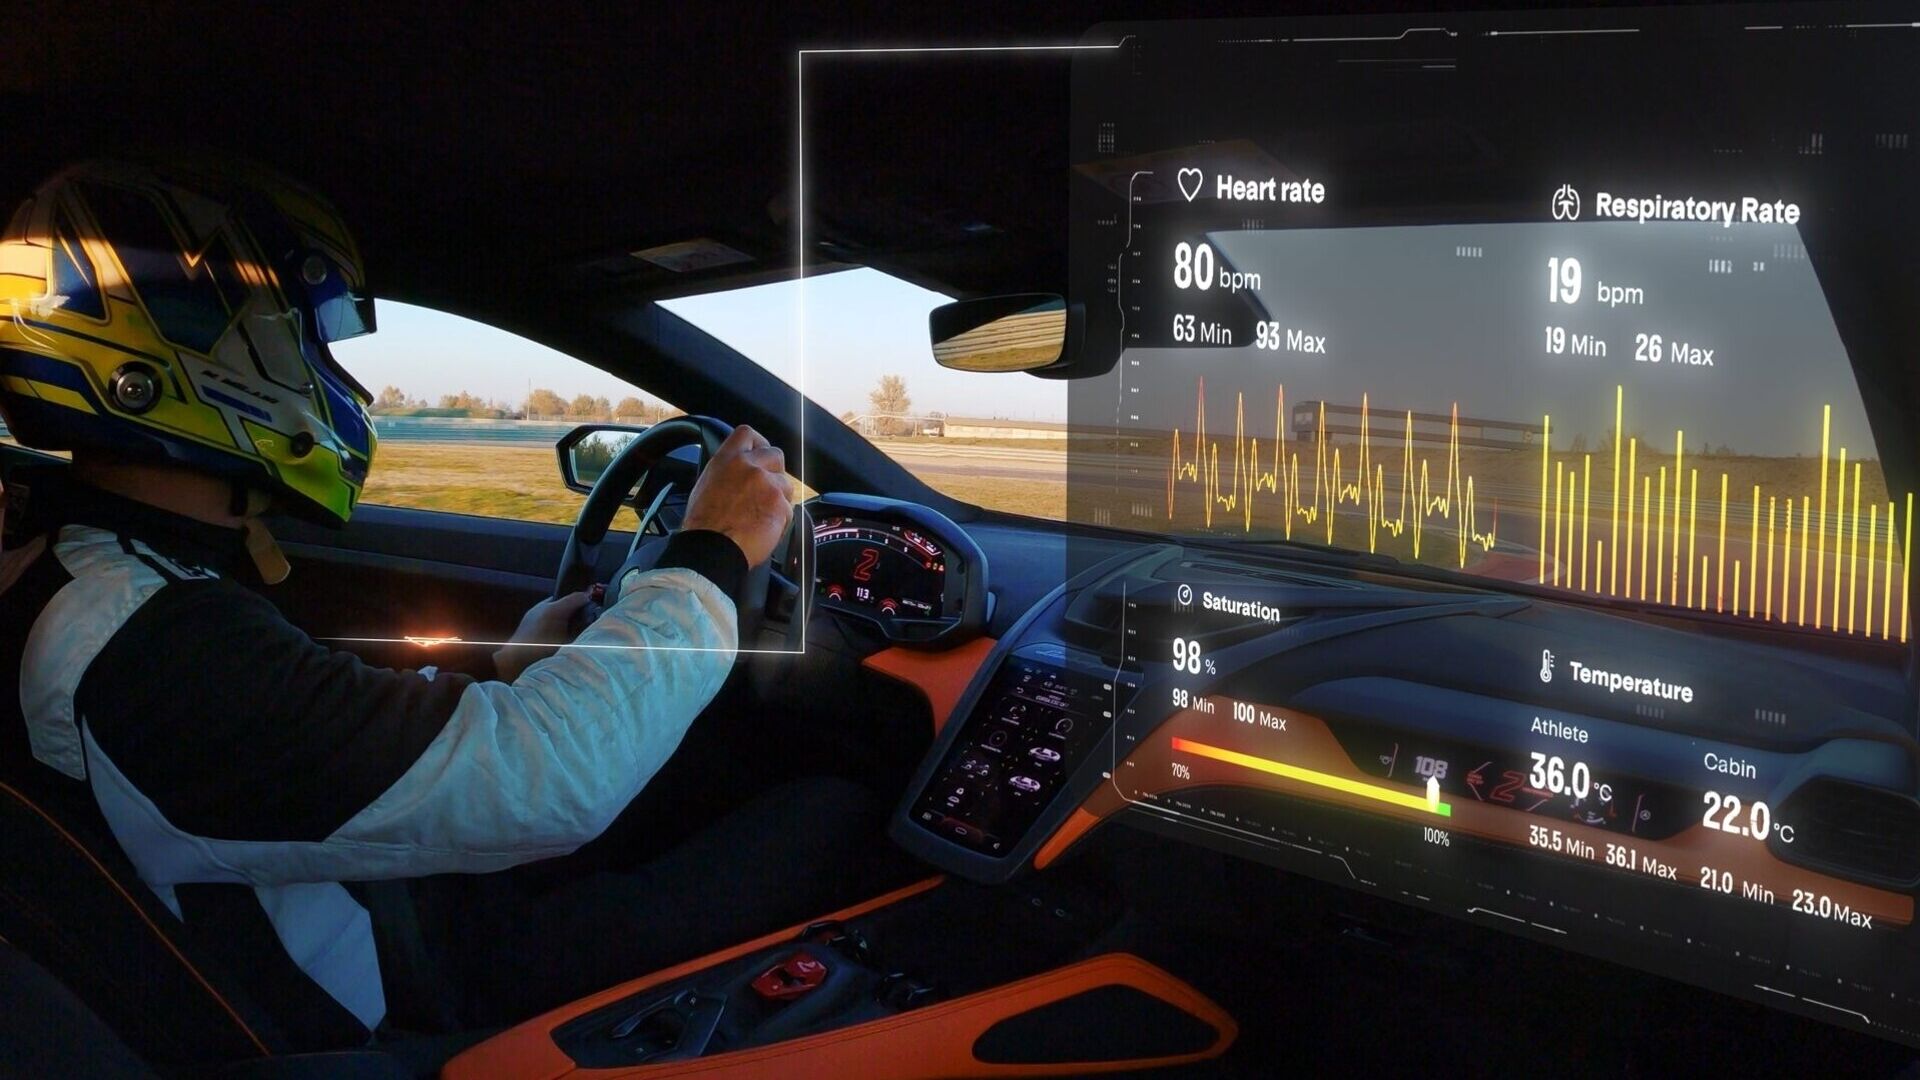 Telemetry X: Lamborghini распрацавала сістэму, якая аб'ядноўвае дыстанцыйнае навучанне ў рэжыме рэальнага часу, выяўленне біяметрычных даных і лічбавы другі пілот